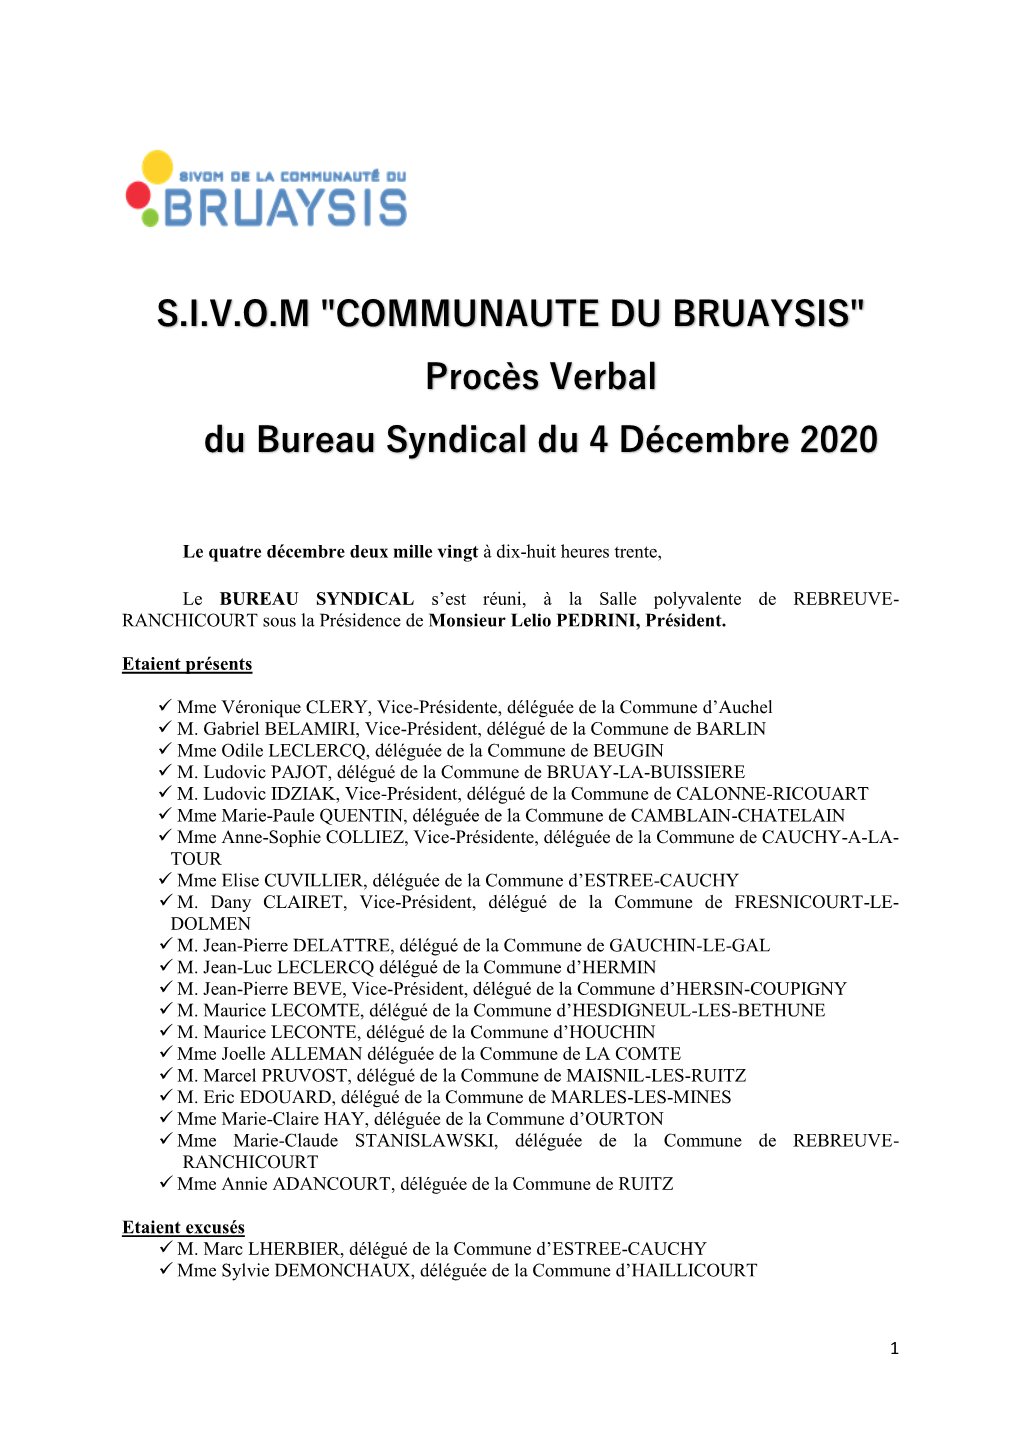 S.I.V.O.M "COMMUNAUTE DU BRUAYSIS" Procès Verbal Du Bureau Syndical Du 4 Décembre 2020